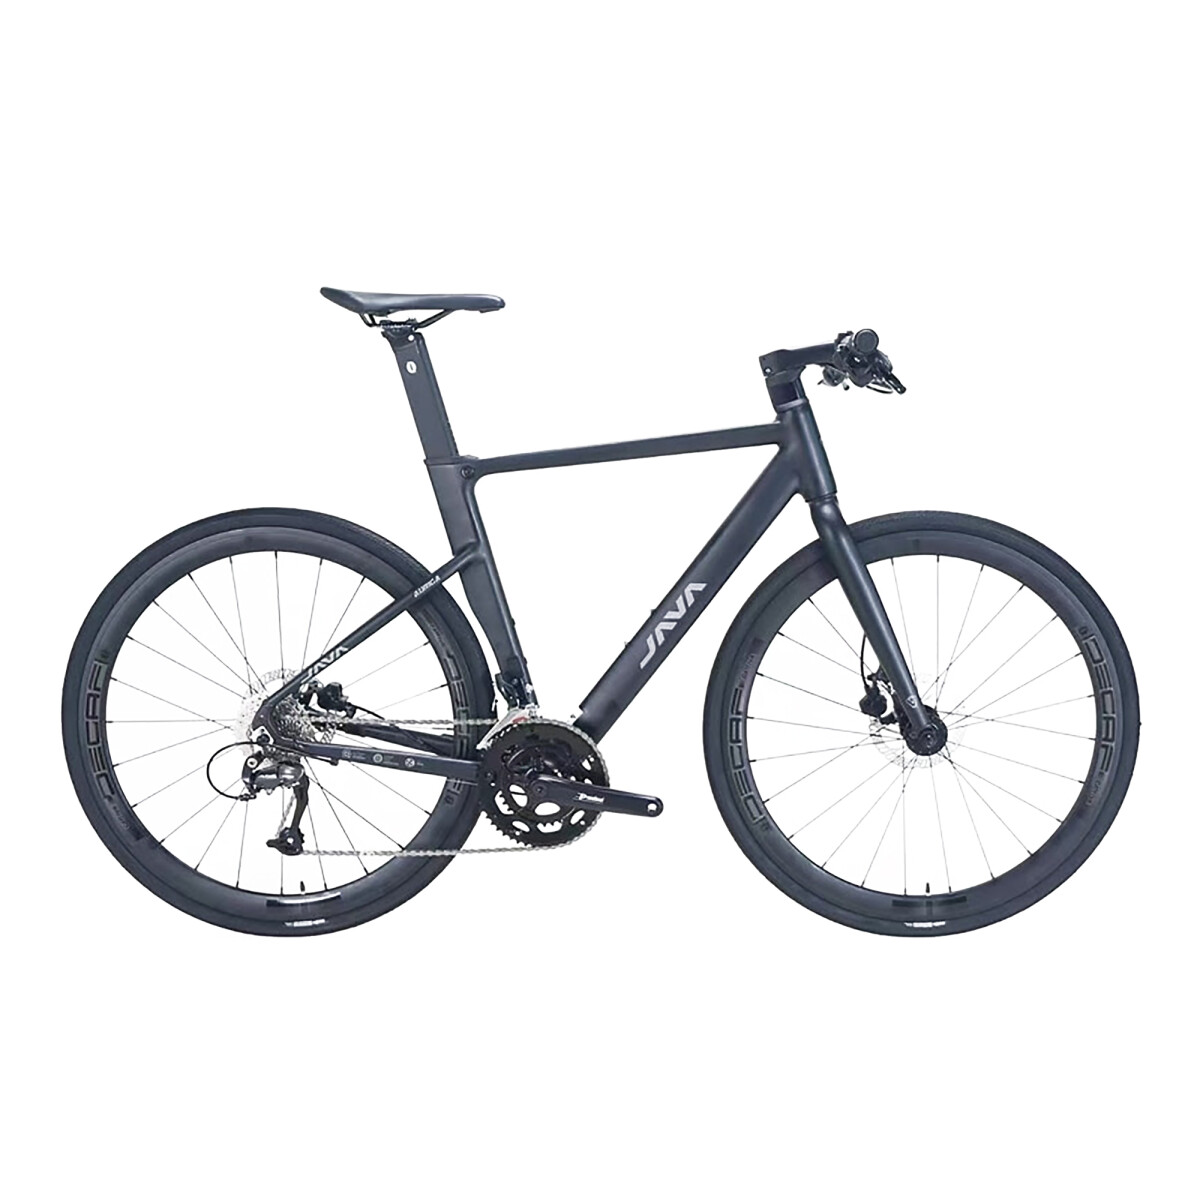 Java - Bicicleta de Ciudad Auriga - 700C. 18 Velocidades, Talle 51. Color Negro. - 001 